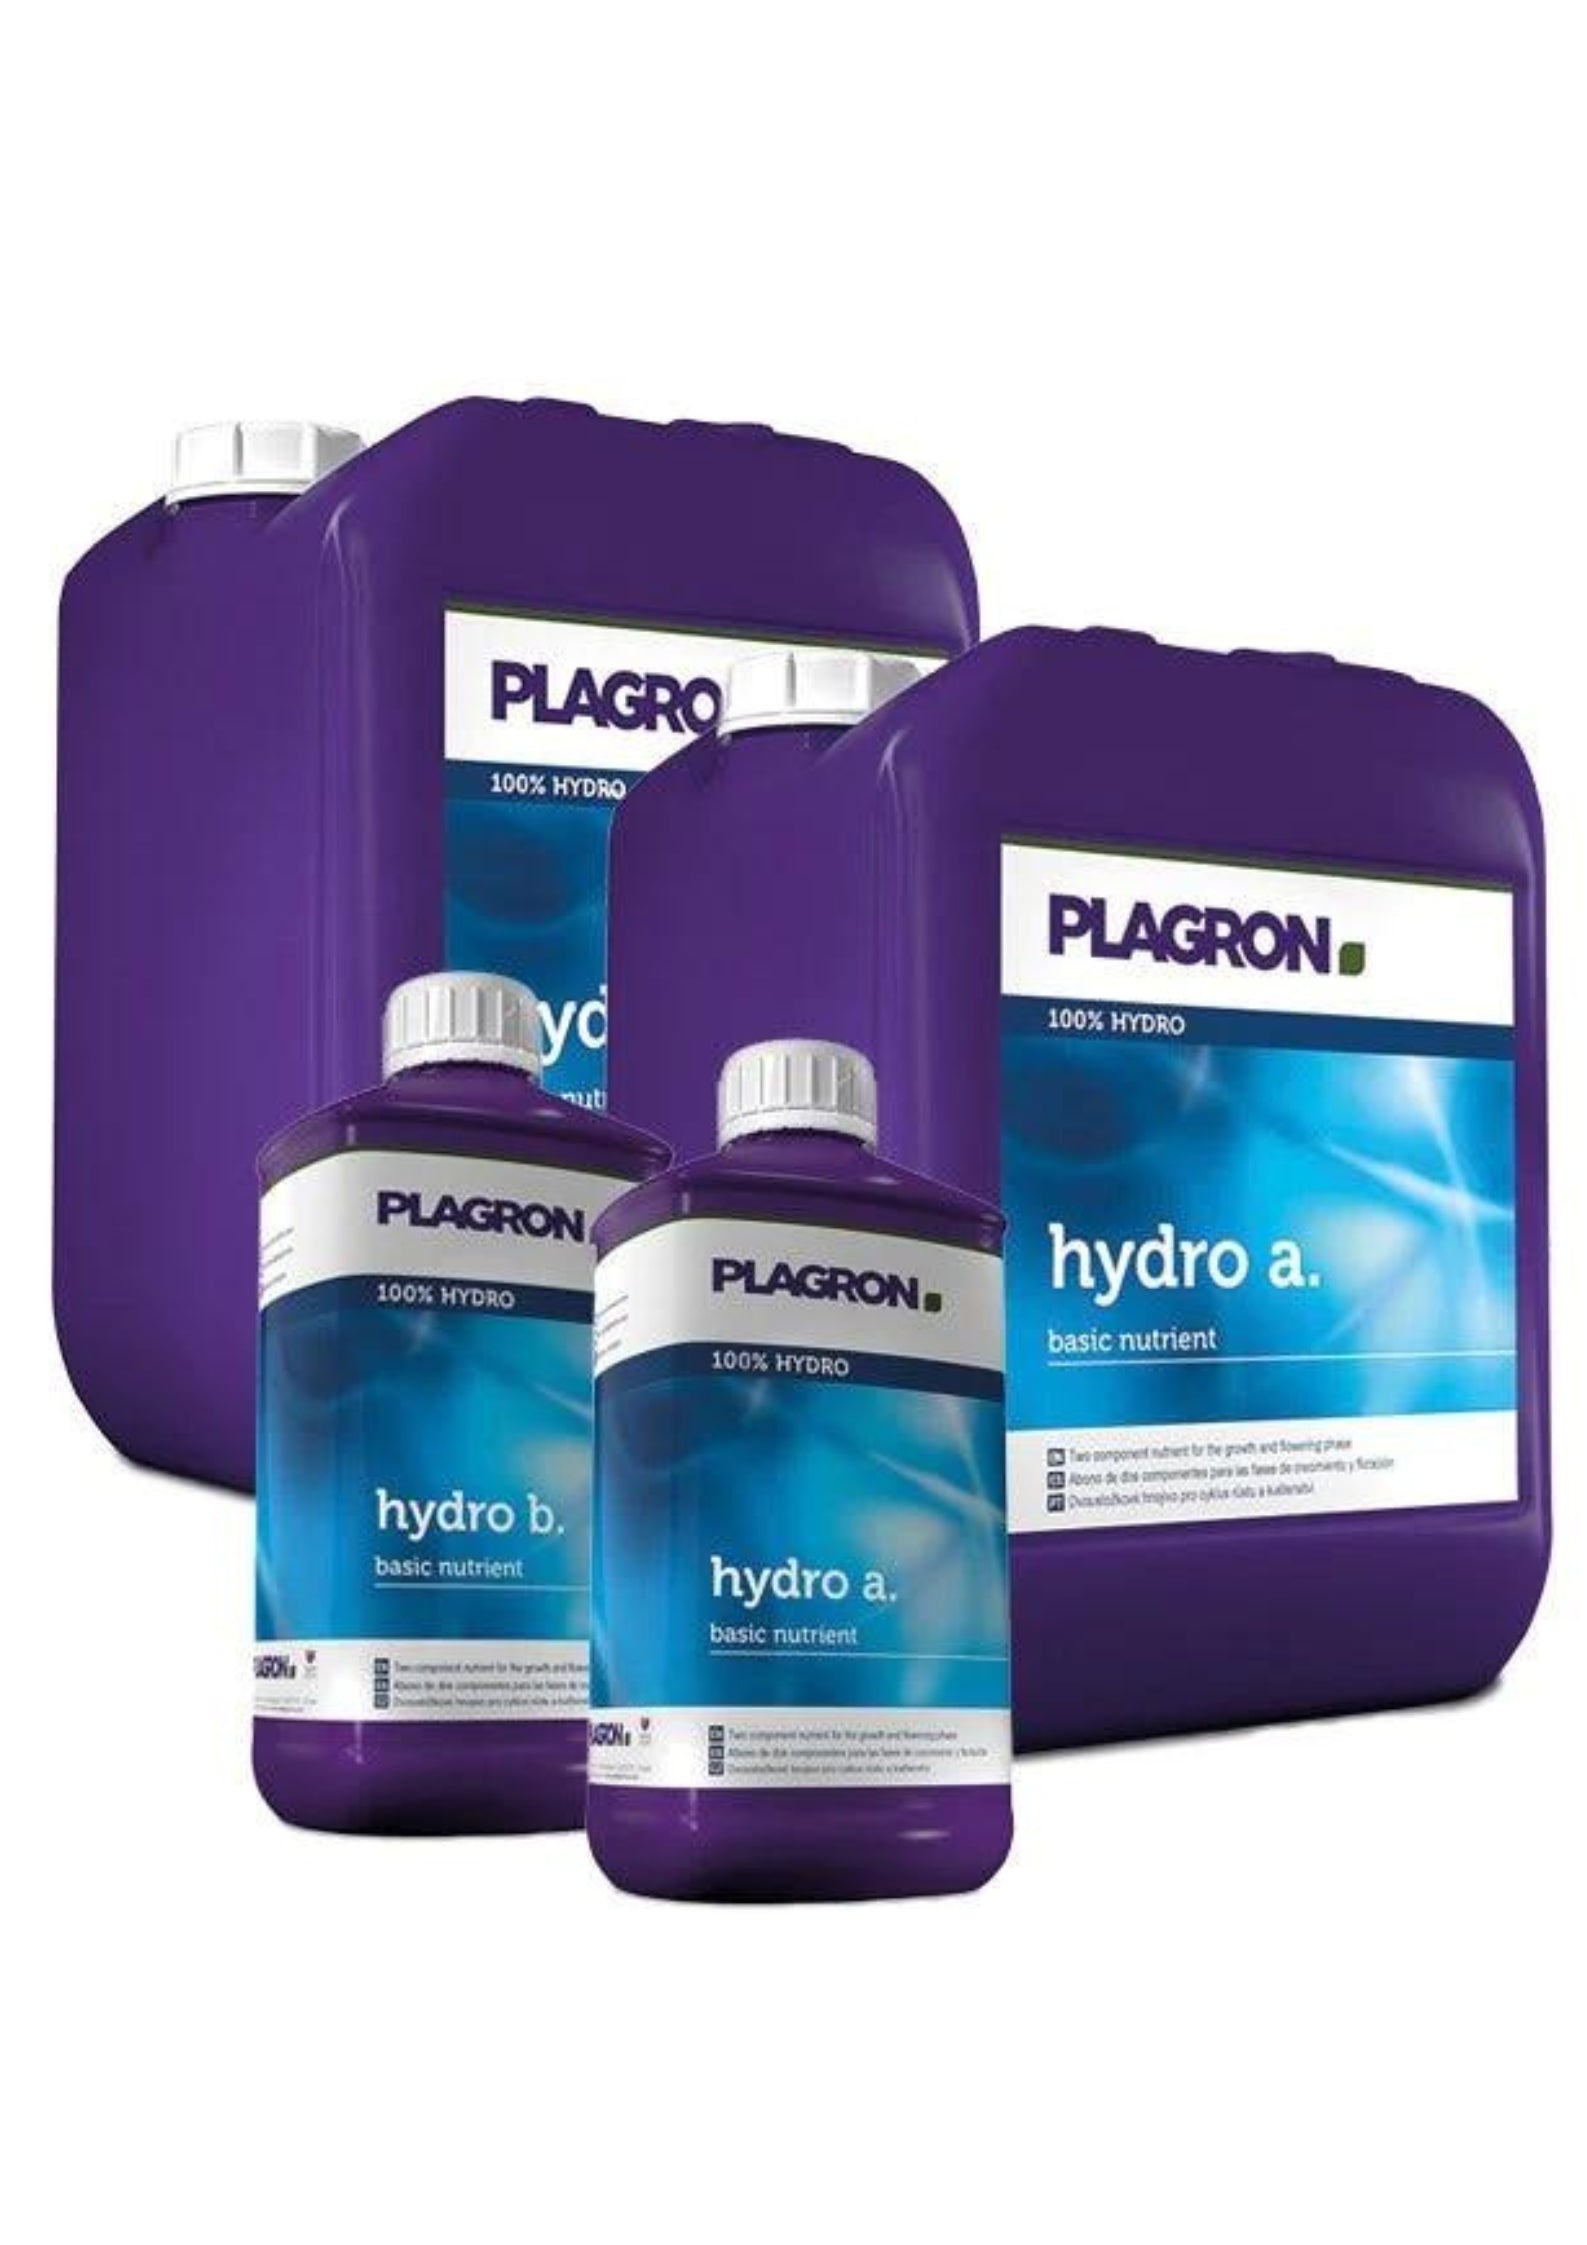 Plagron Hydro A+B